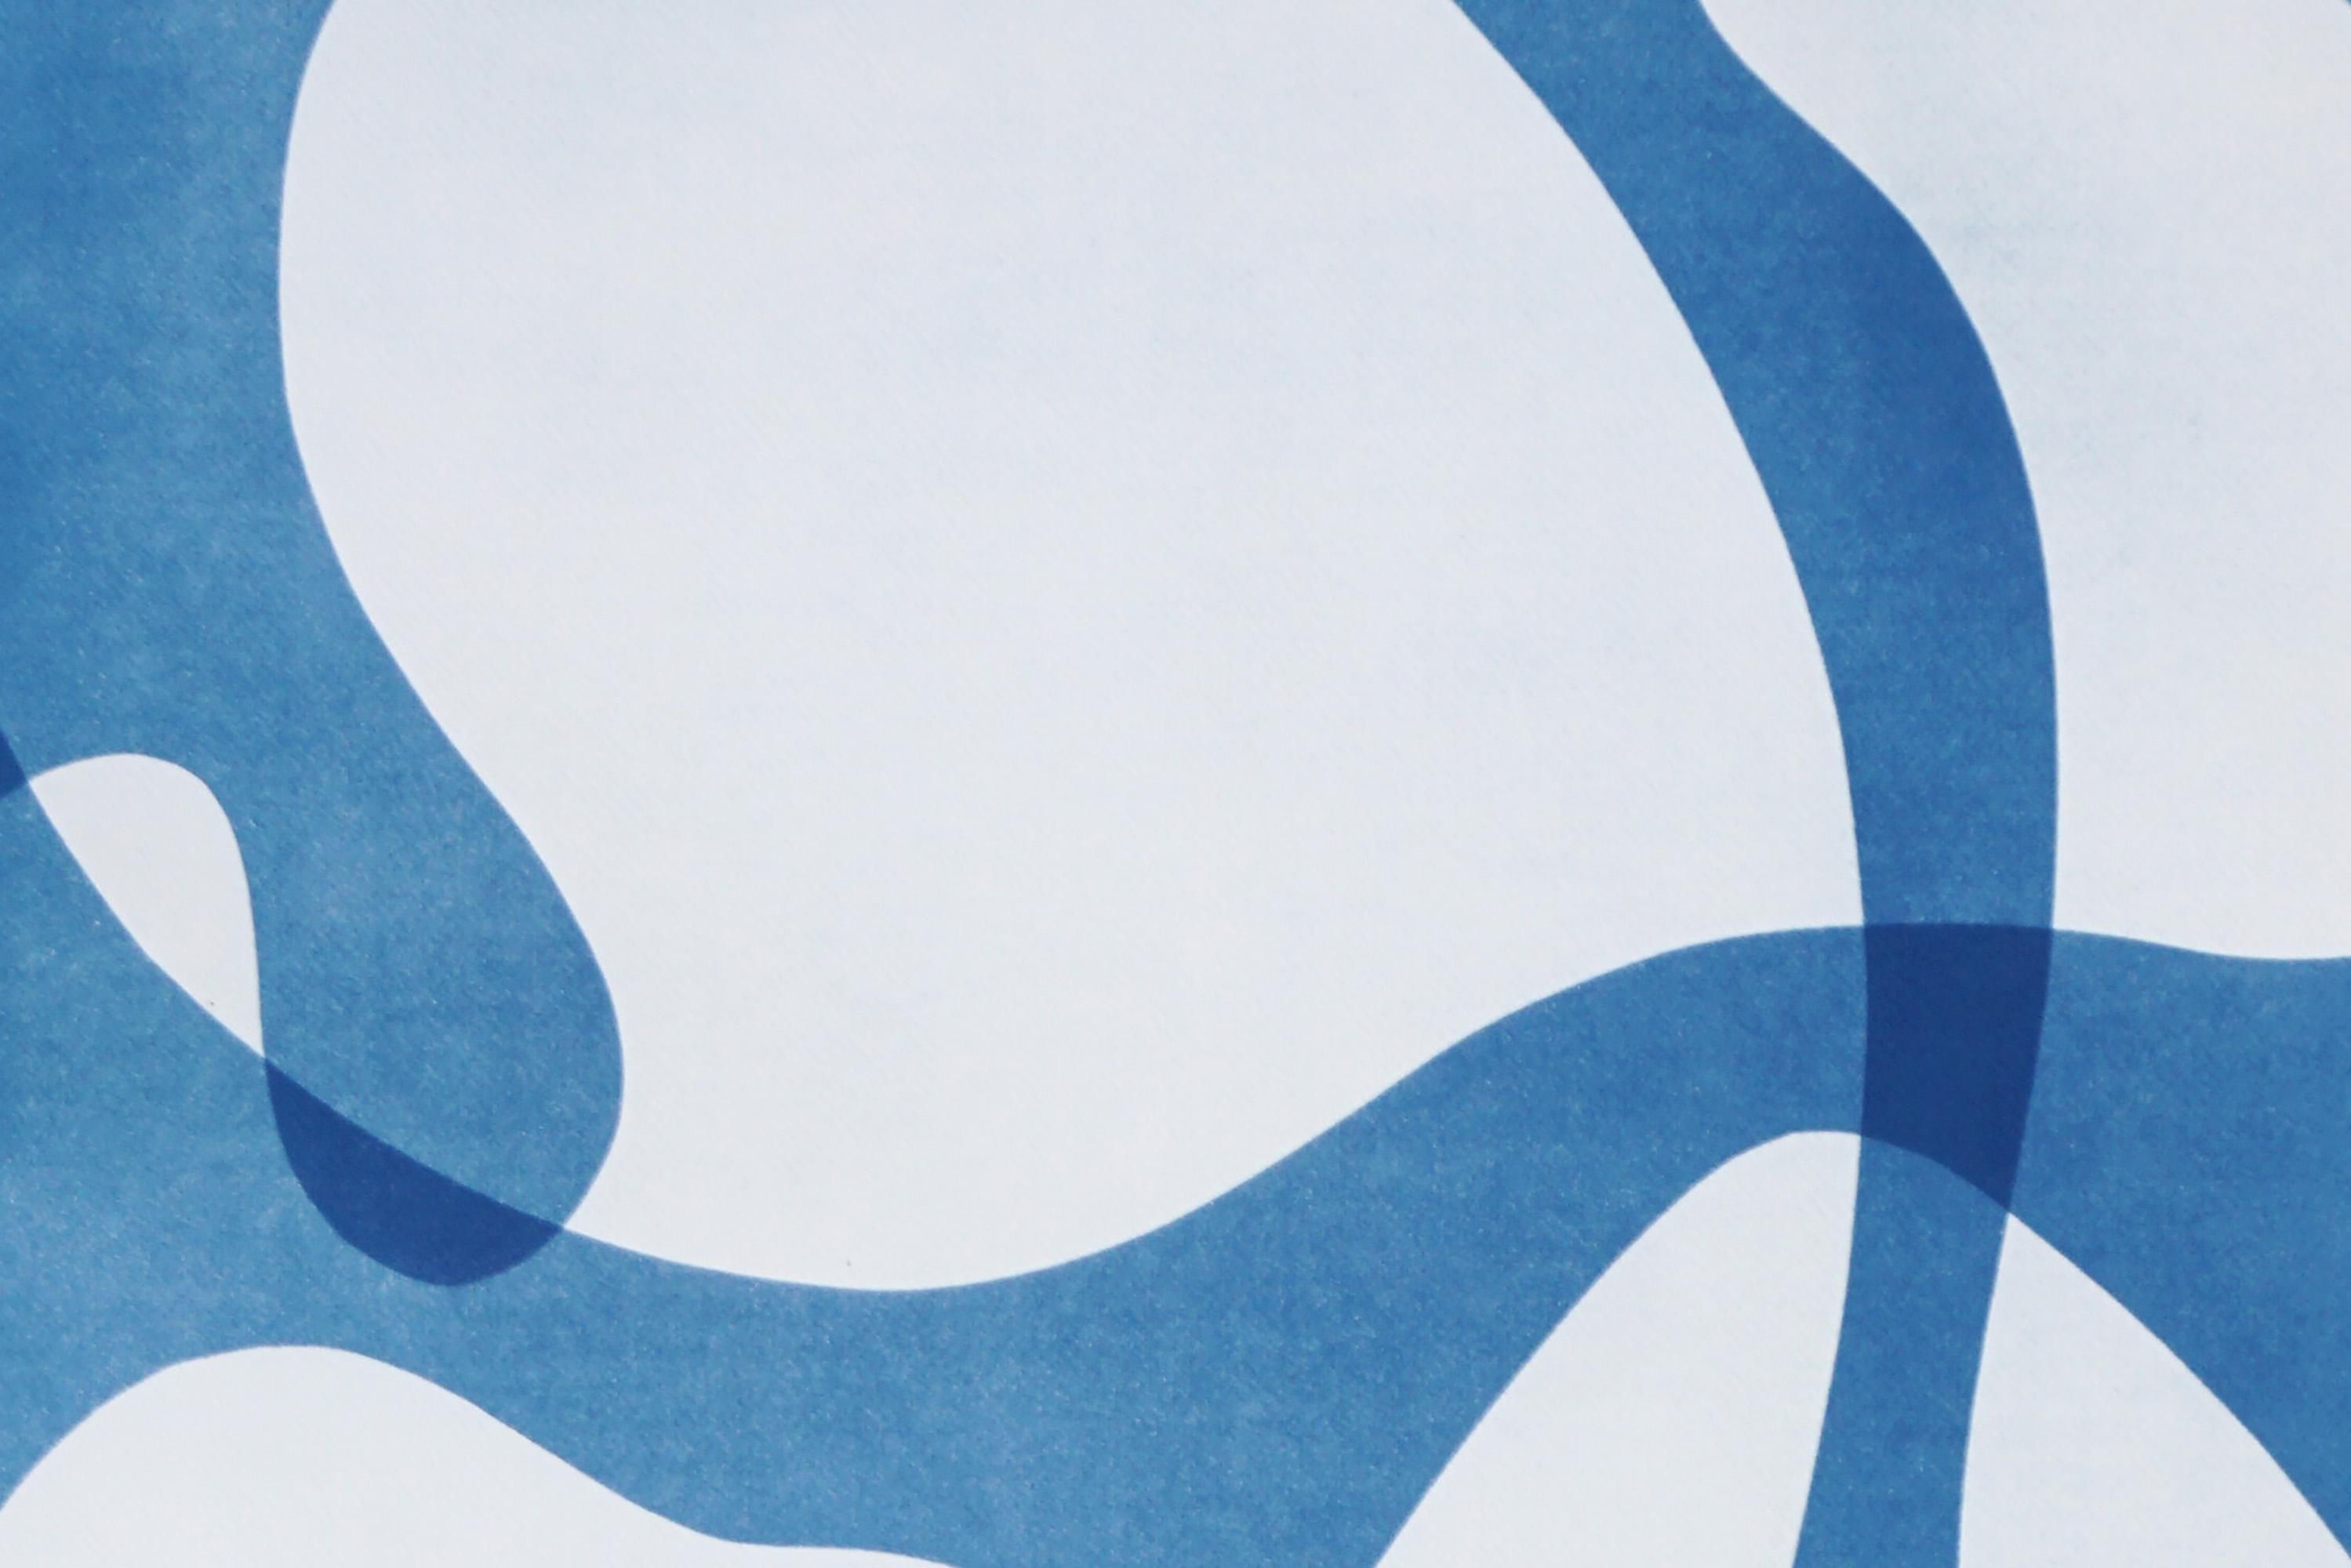 Il s'agit d'un cyanotype unique exclusif, imprimé à la main, qui s'inspire des formes modernes du milieu du siècle dernier.
Il a été réalisé en superposant des papiers découpés et différentes expositions à la lumière UV. 

Détails :
+ Titre : Formes